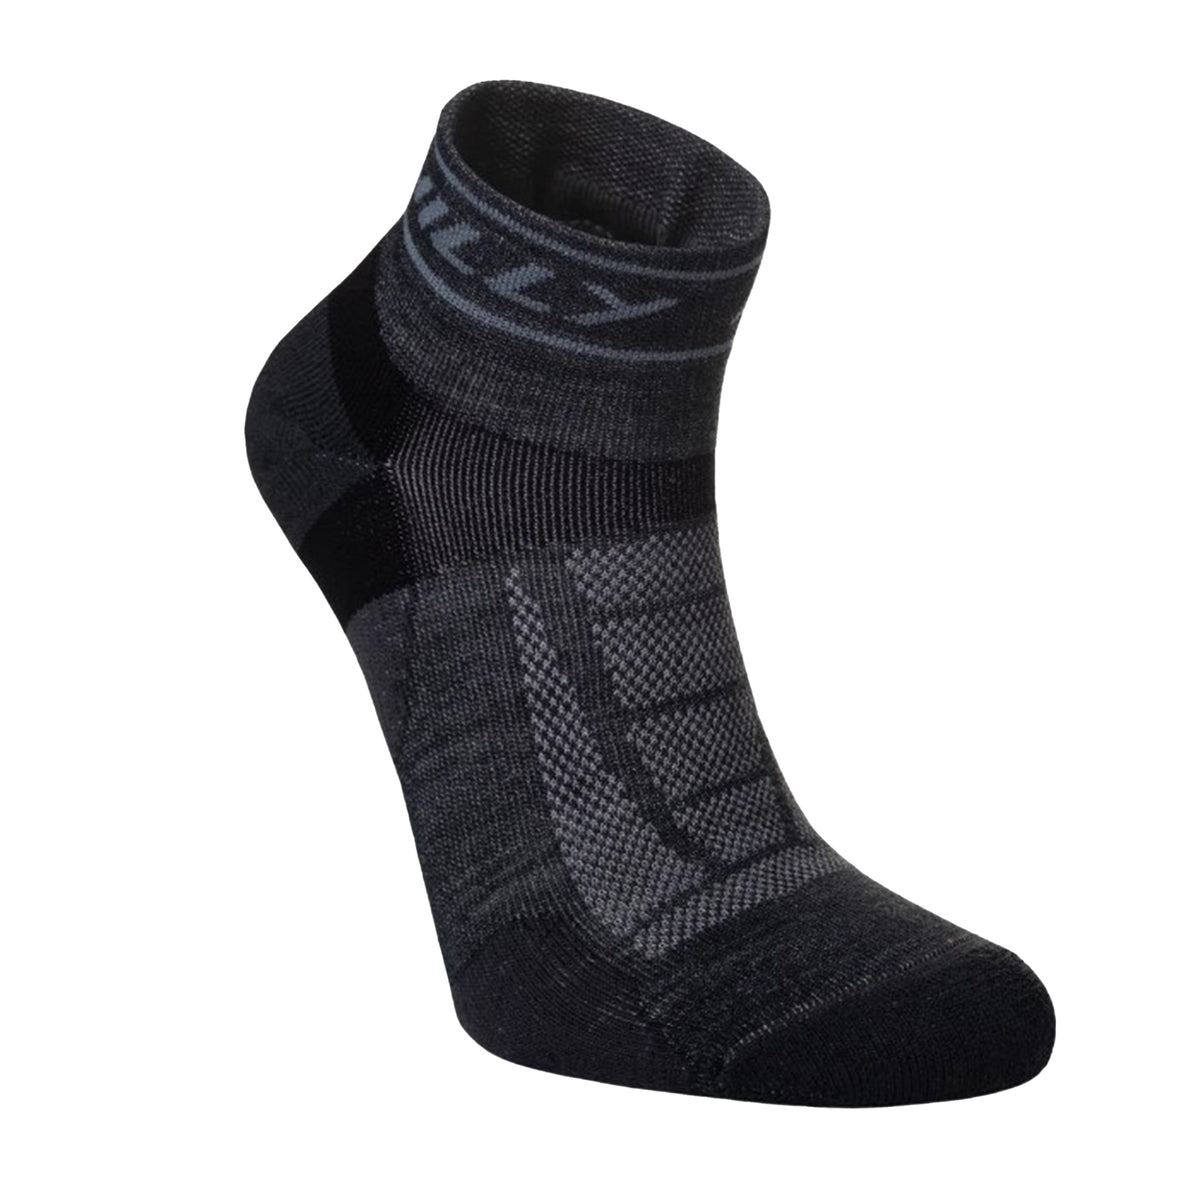 Hilly Trail Quarter Med Running Socks: Charcoal/Black